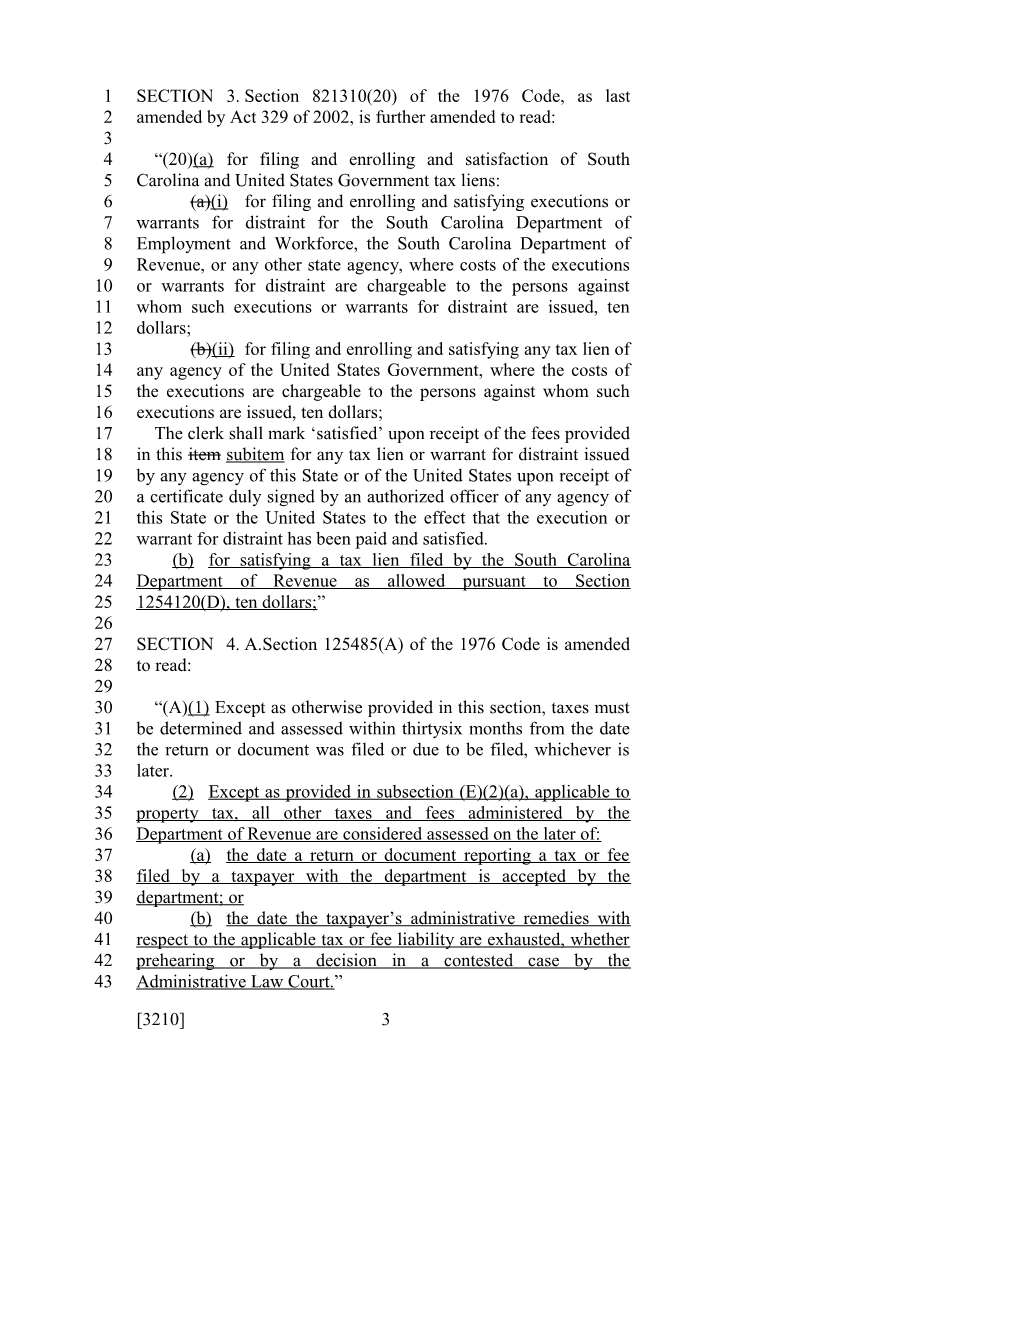 2015-2016 Bill 3210 Text of Previous Version (Dec. 18, 2014) - South Carolina Legislature Online